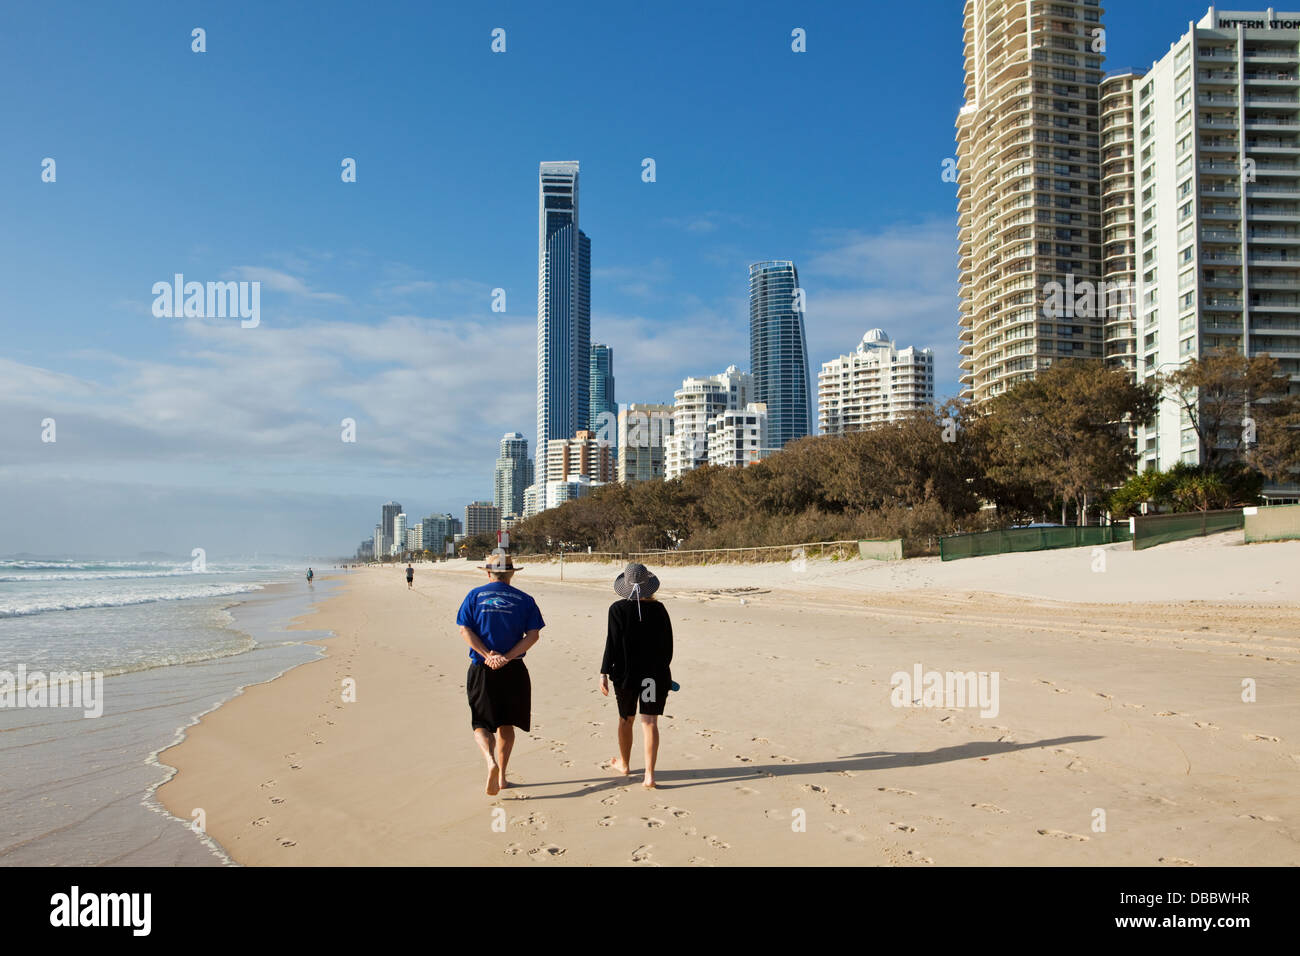 Couple en train de marcher le long de plage avec des toits de la ville en arrière-plan. Surfers Paradise, Gold Coast, Queensland, Australie Banque D'Images